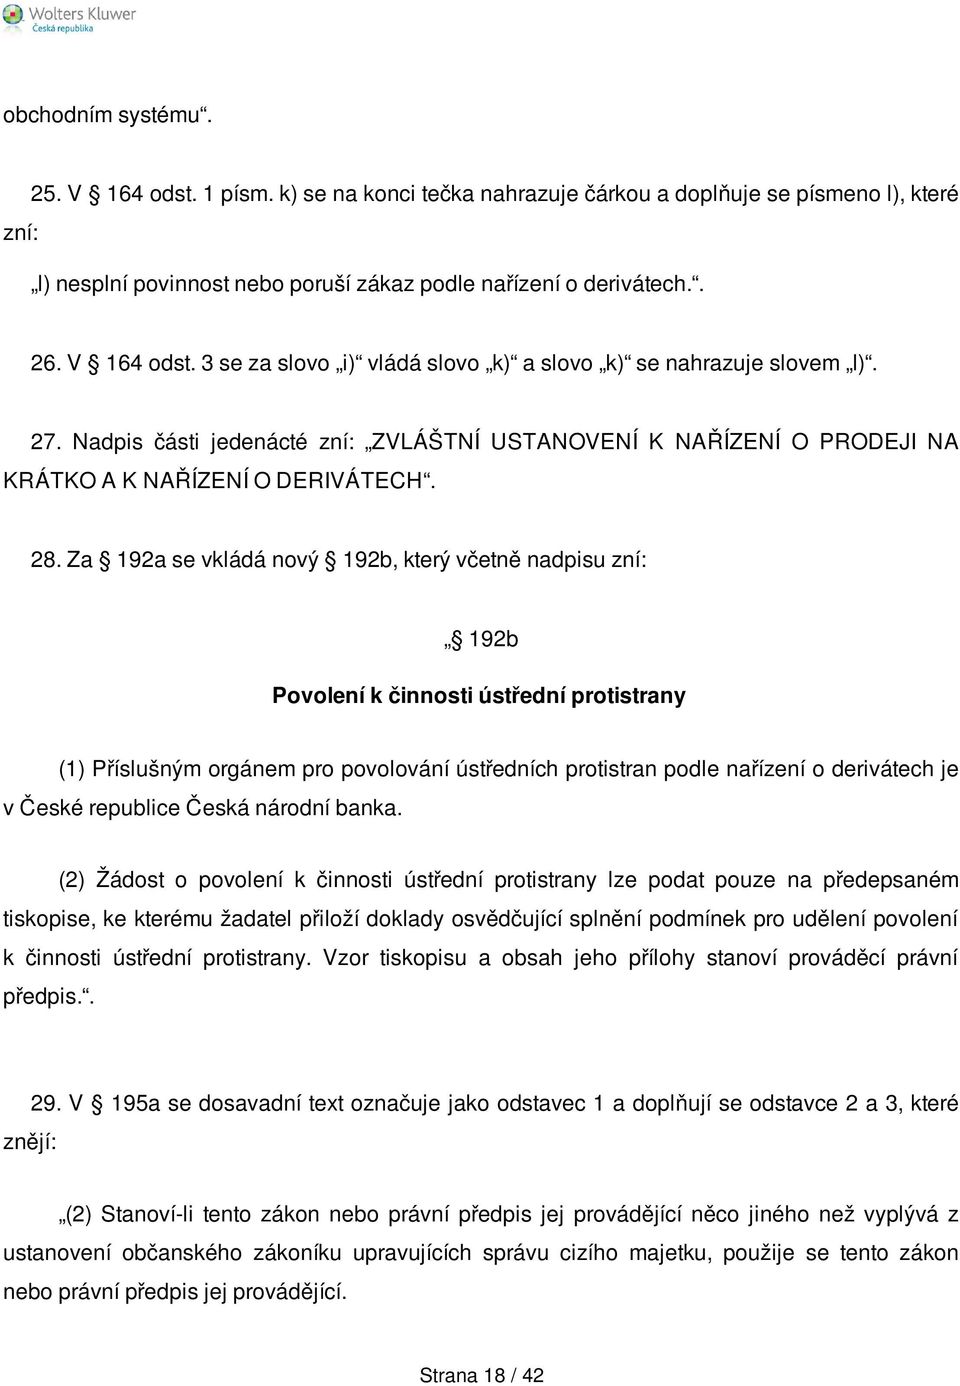 Za 192a se vkládá nový 192b, který včetně nadpisu zní: 192b Povolení k činnosti ústřední protistrany (1) Příslušným orgánem pro povolování ústředních protistran podle nařízení o derivátech je v České